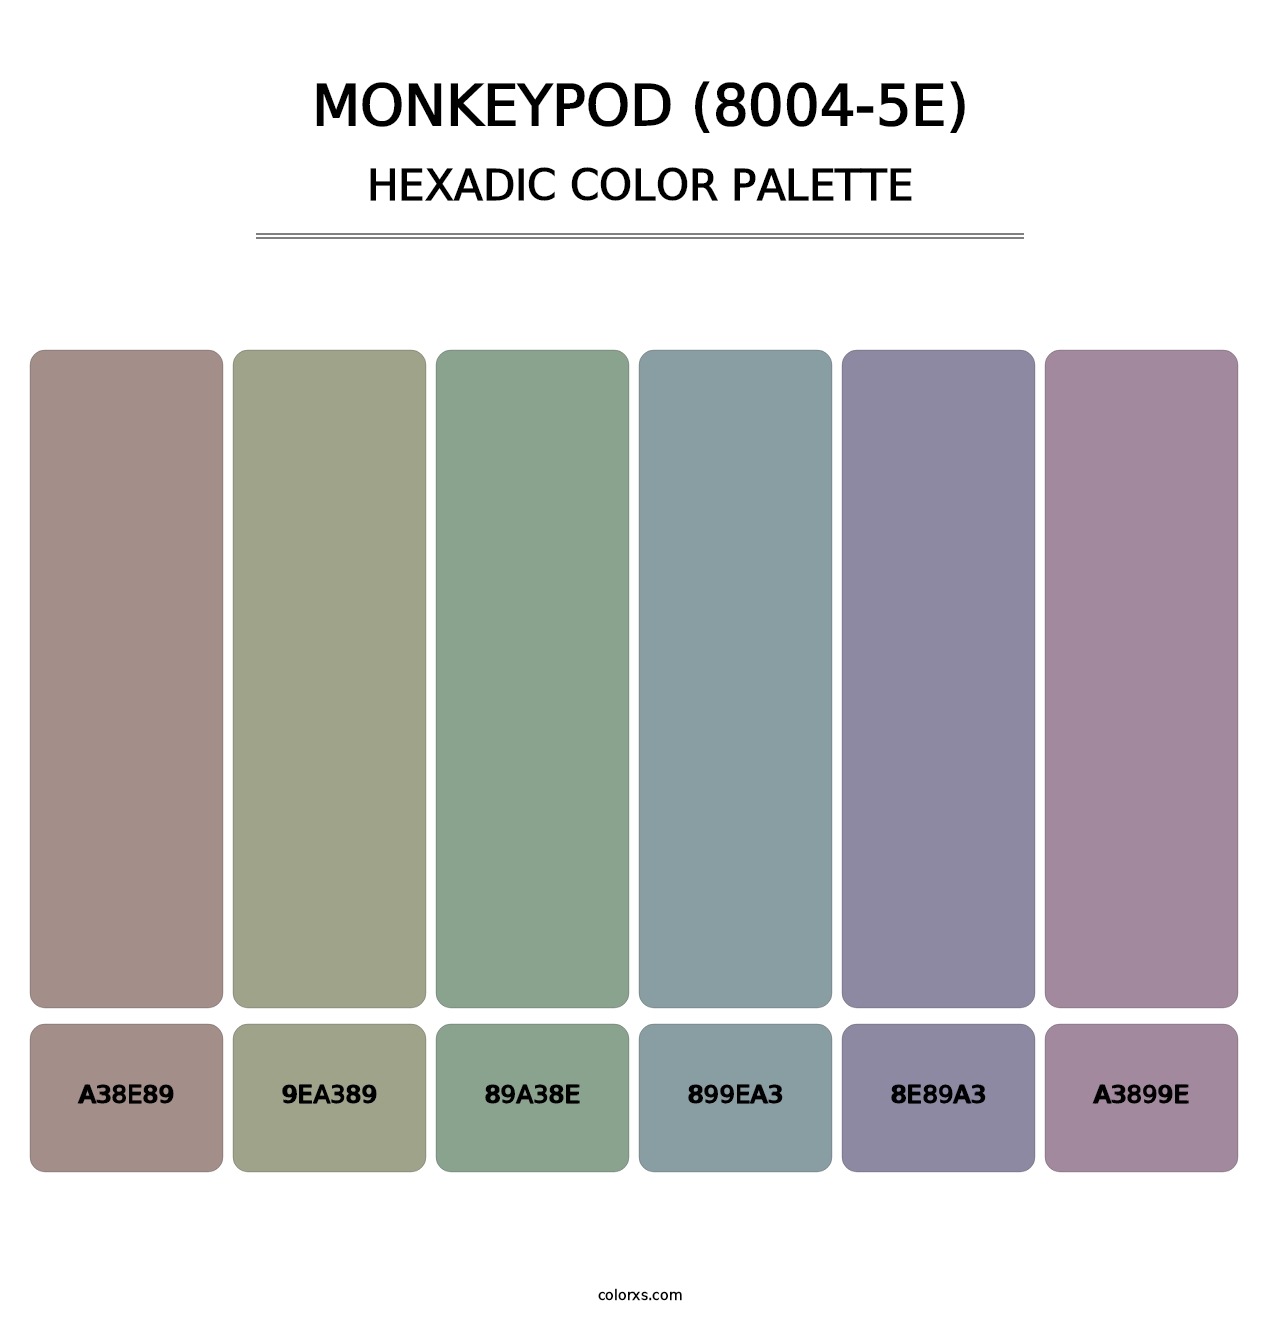 Monkeypod (8004-5E) - Hexadic Color Palette